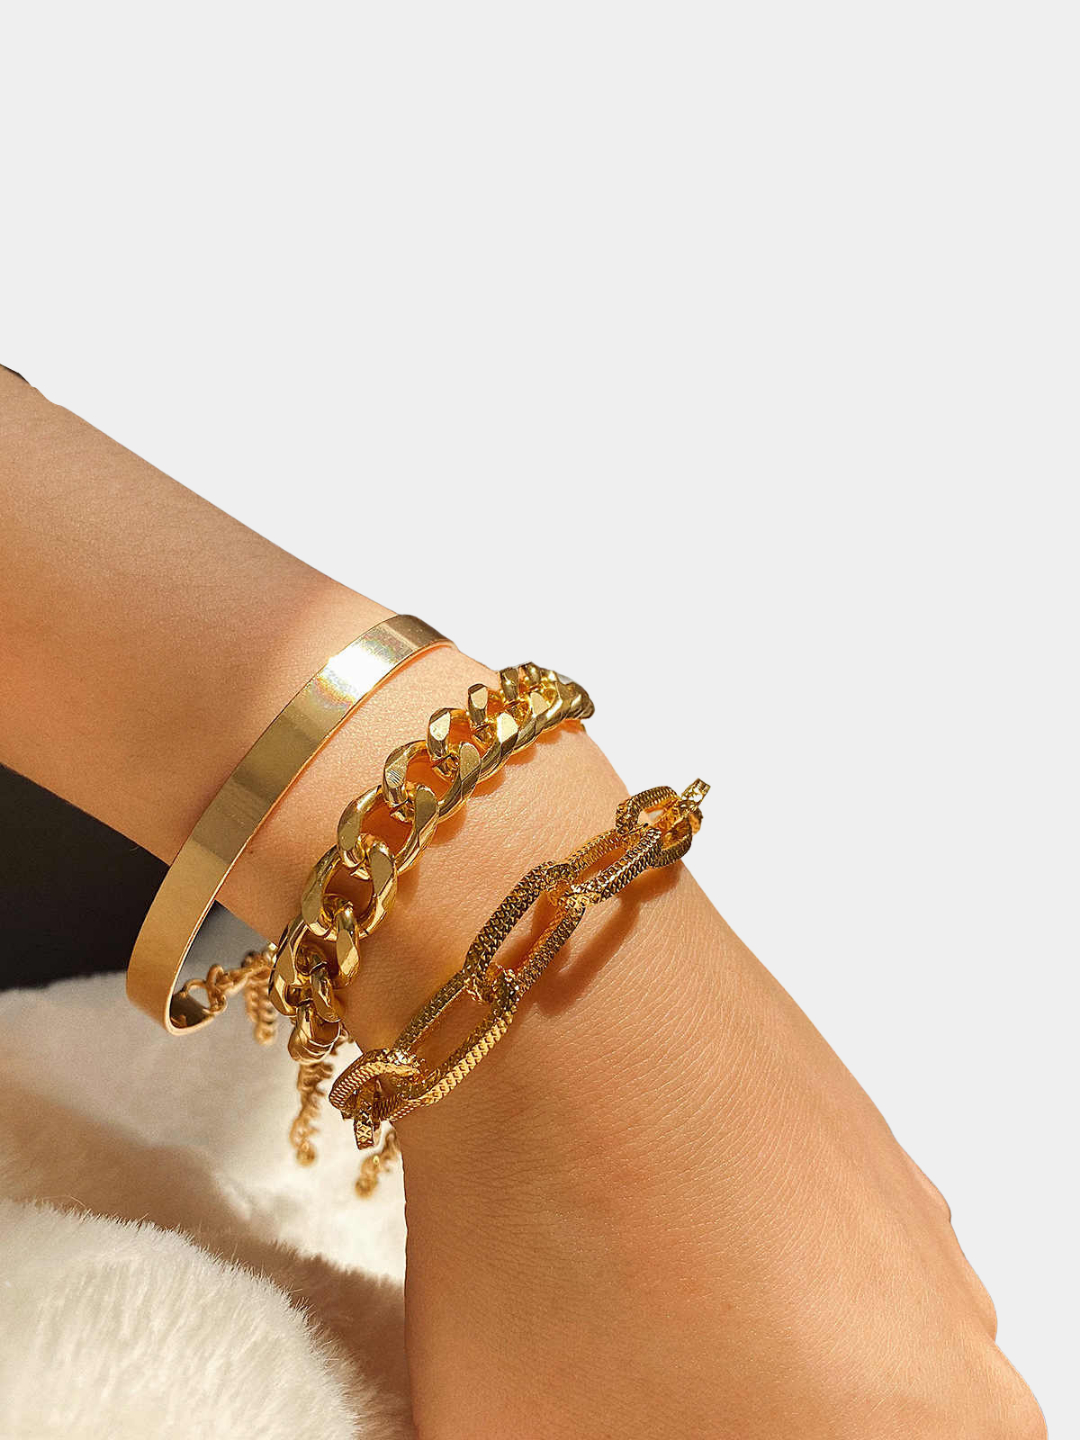 Набор браслетов - цепи, женский браслет цепочка, крупные звенья купить поцене 249 ₽ в интернет-магазине KazanExpress